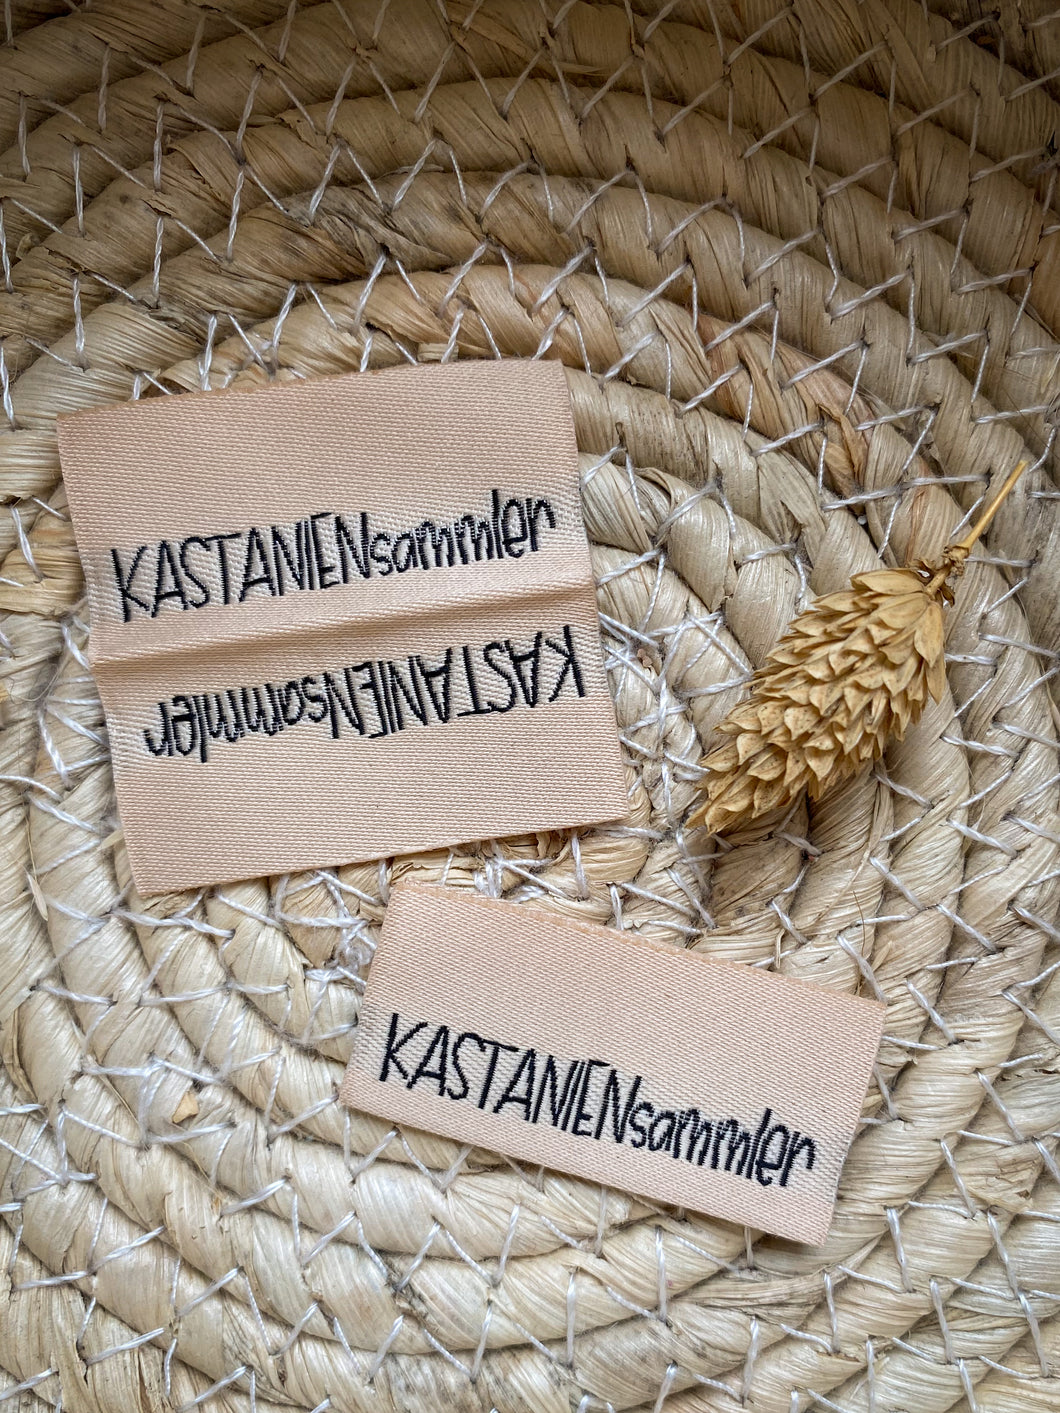 Kastaniensammler - Web Label